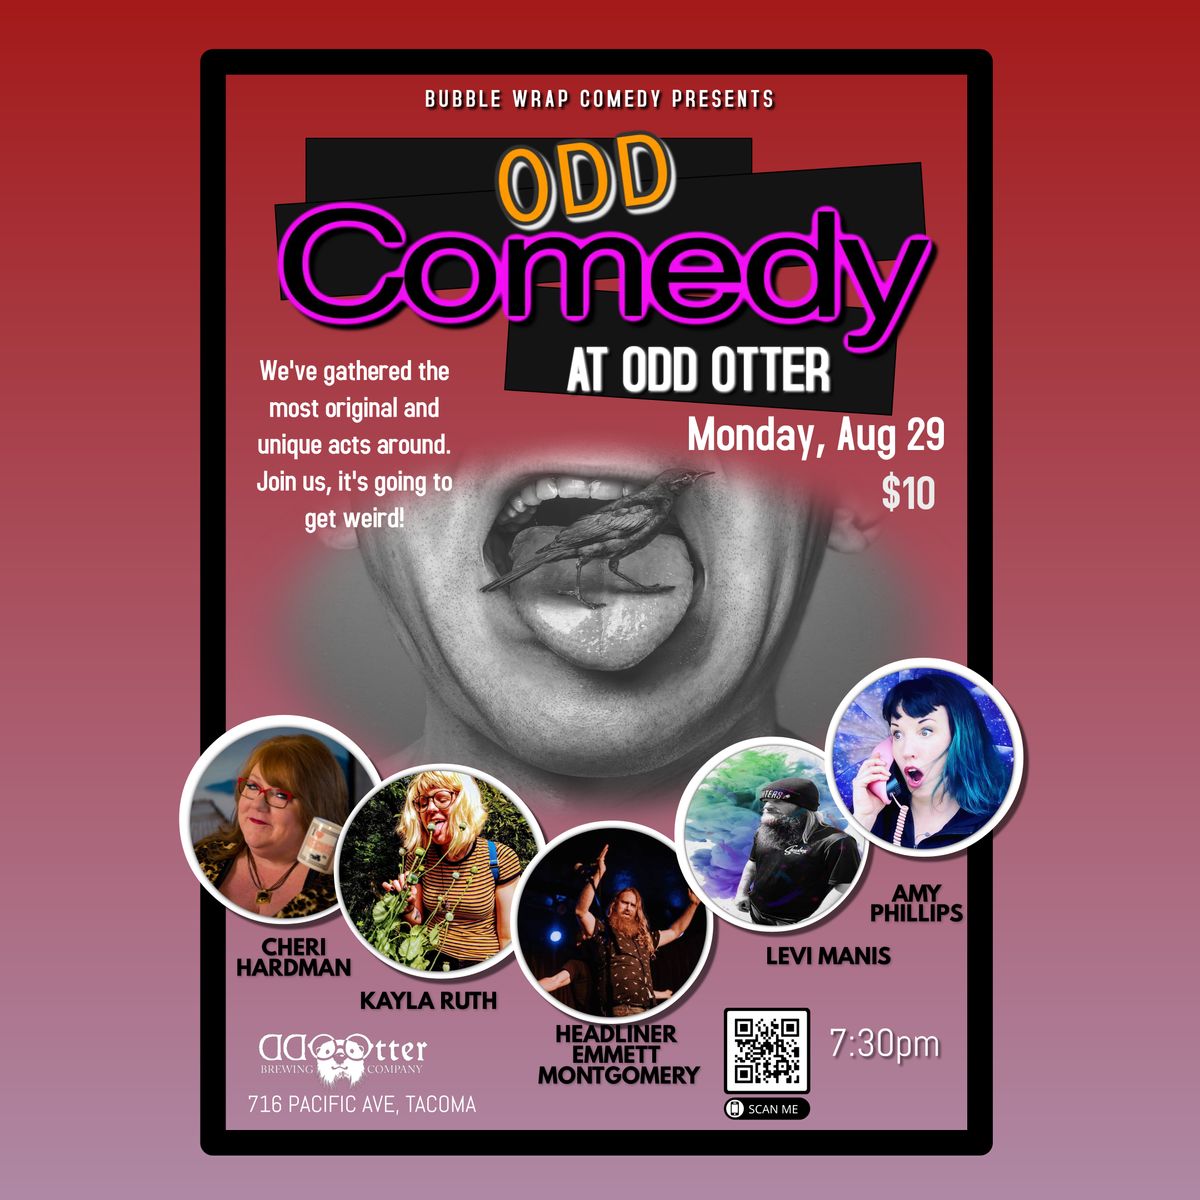 Odd Comedy at Odd Otter Brewing Company in Tacoma, WA Mon, Aug 29, 2022 - Seattle